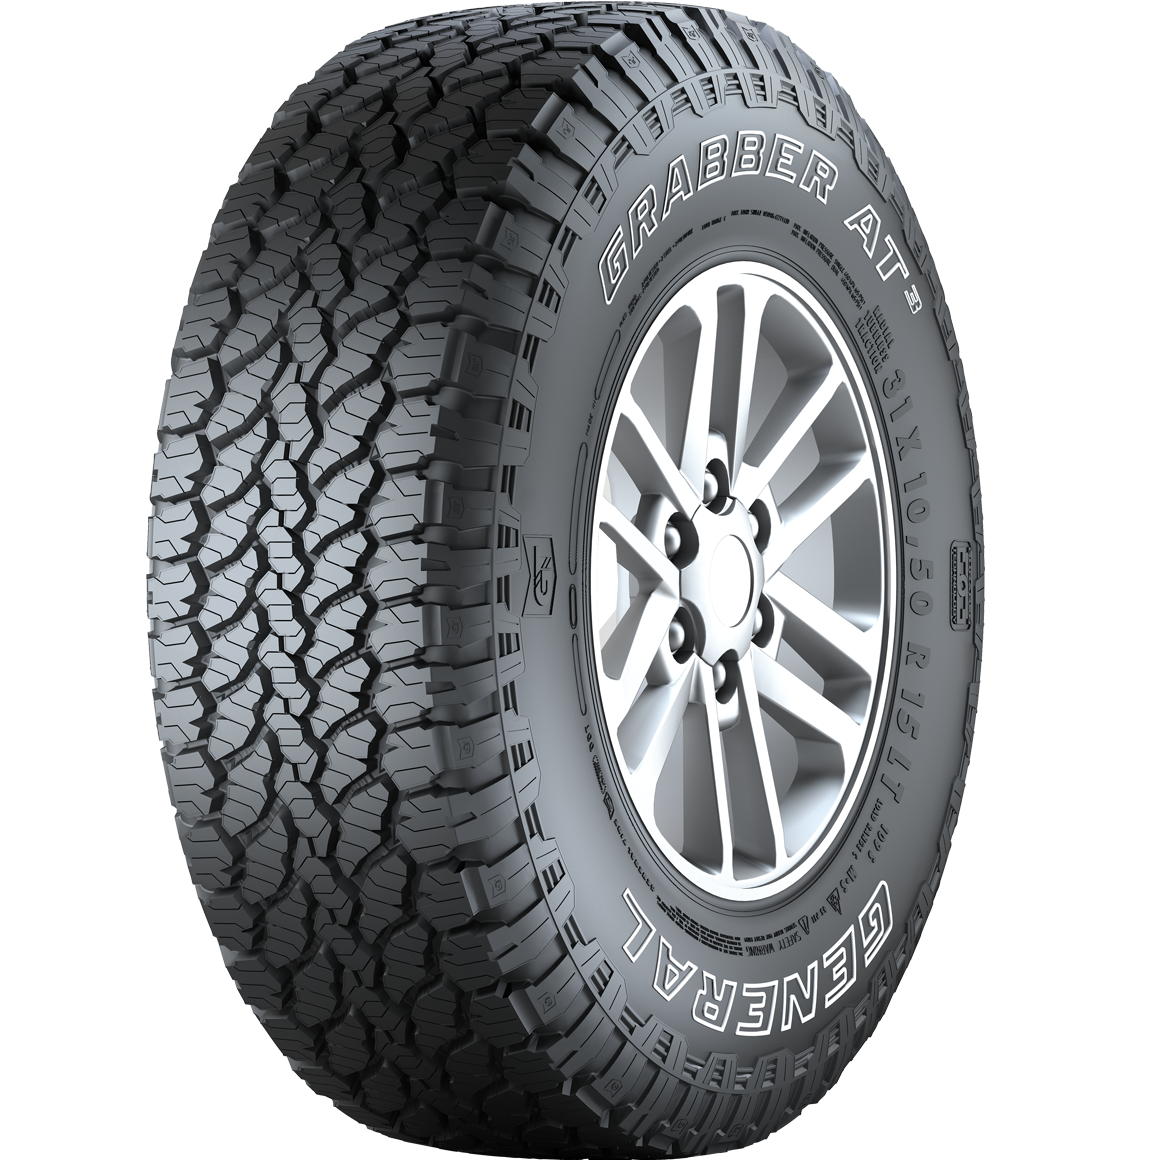 General Tire Grabber AT3 215/75R15 100T M+S 3PMSF - KolayOto